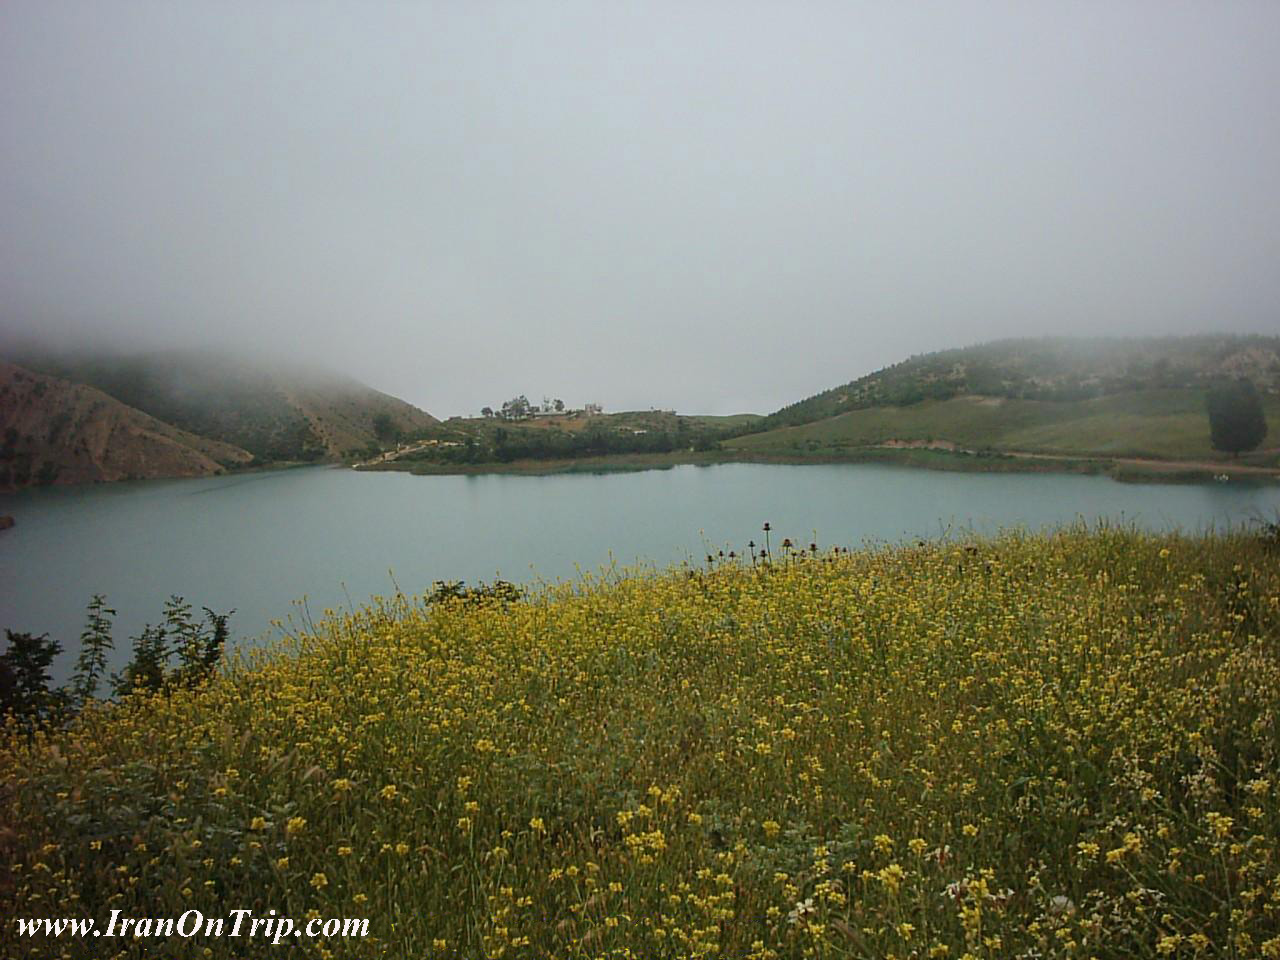 Valasht Lake in Iran